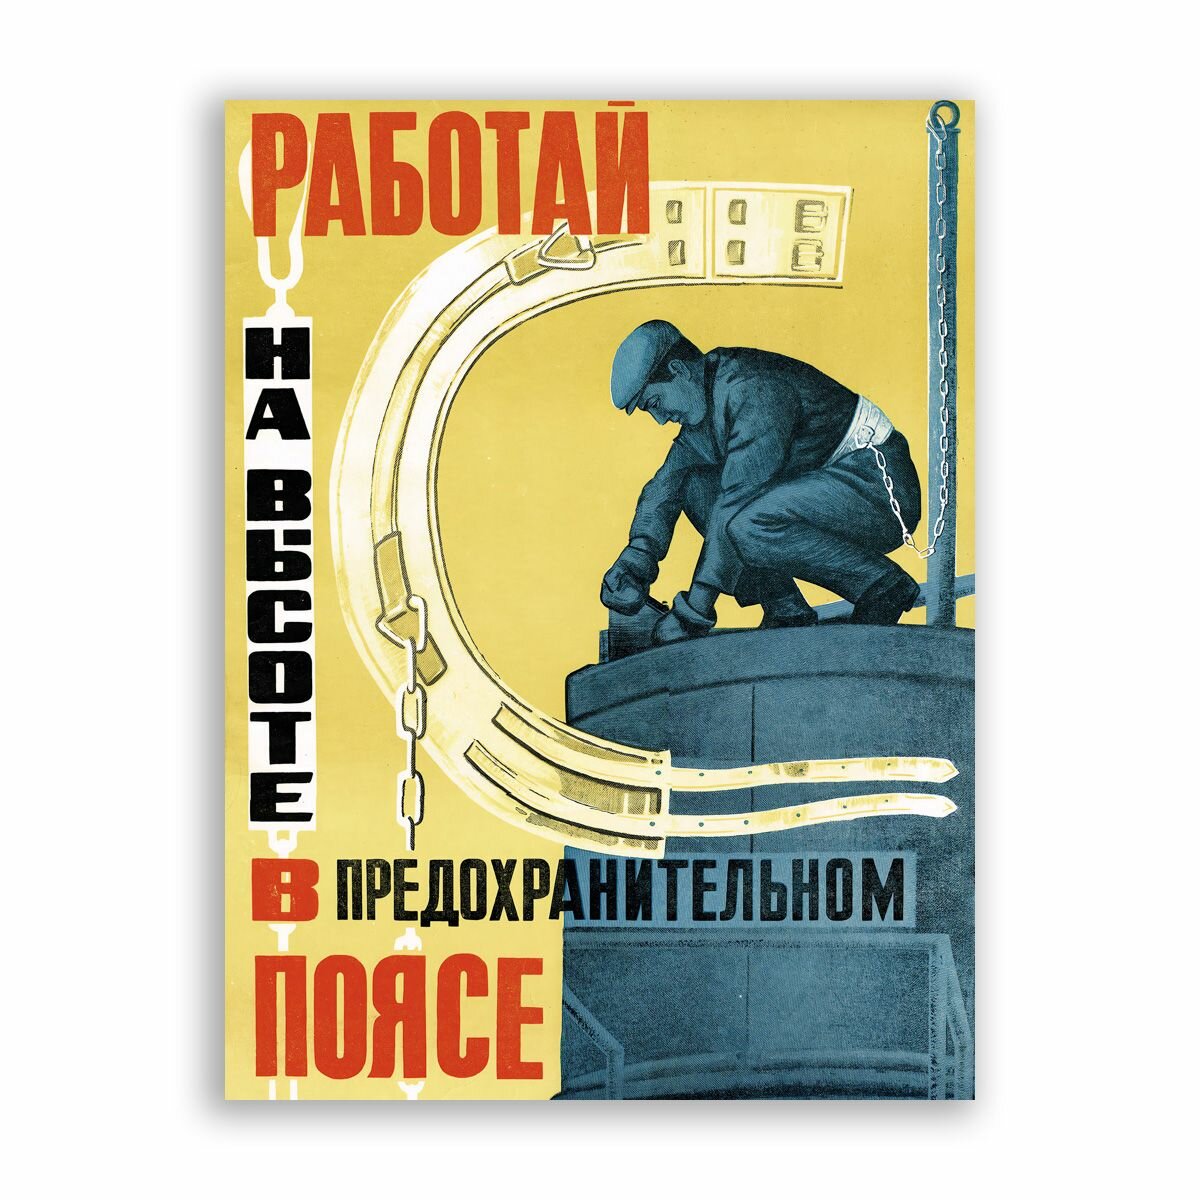 Советский постер плакат на бумаге / Работай на высоте в предохранительном поясе / Размер 40 x 53 см